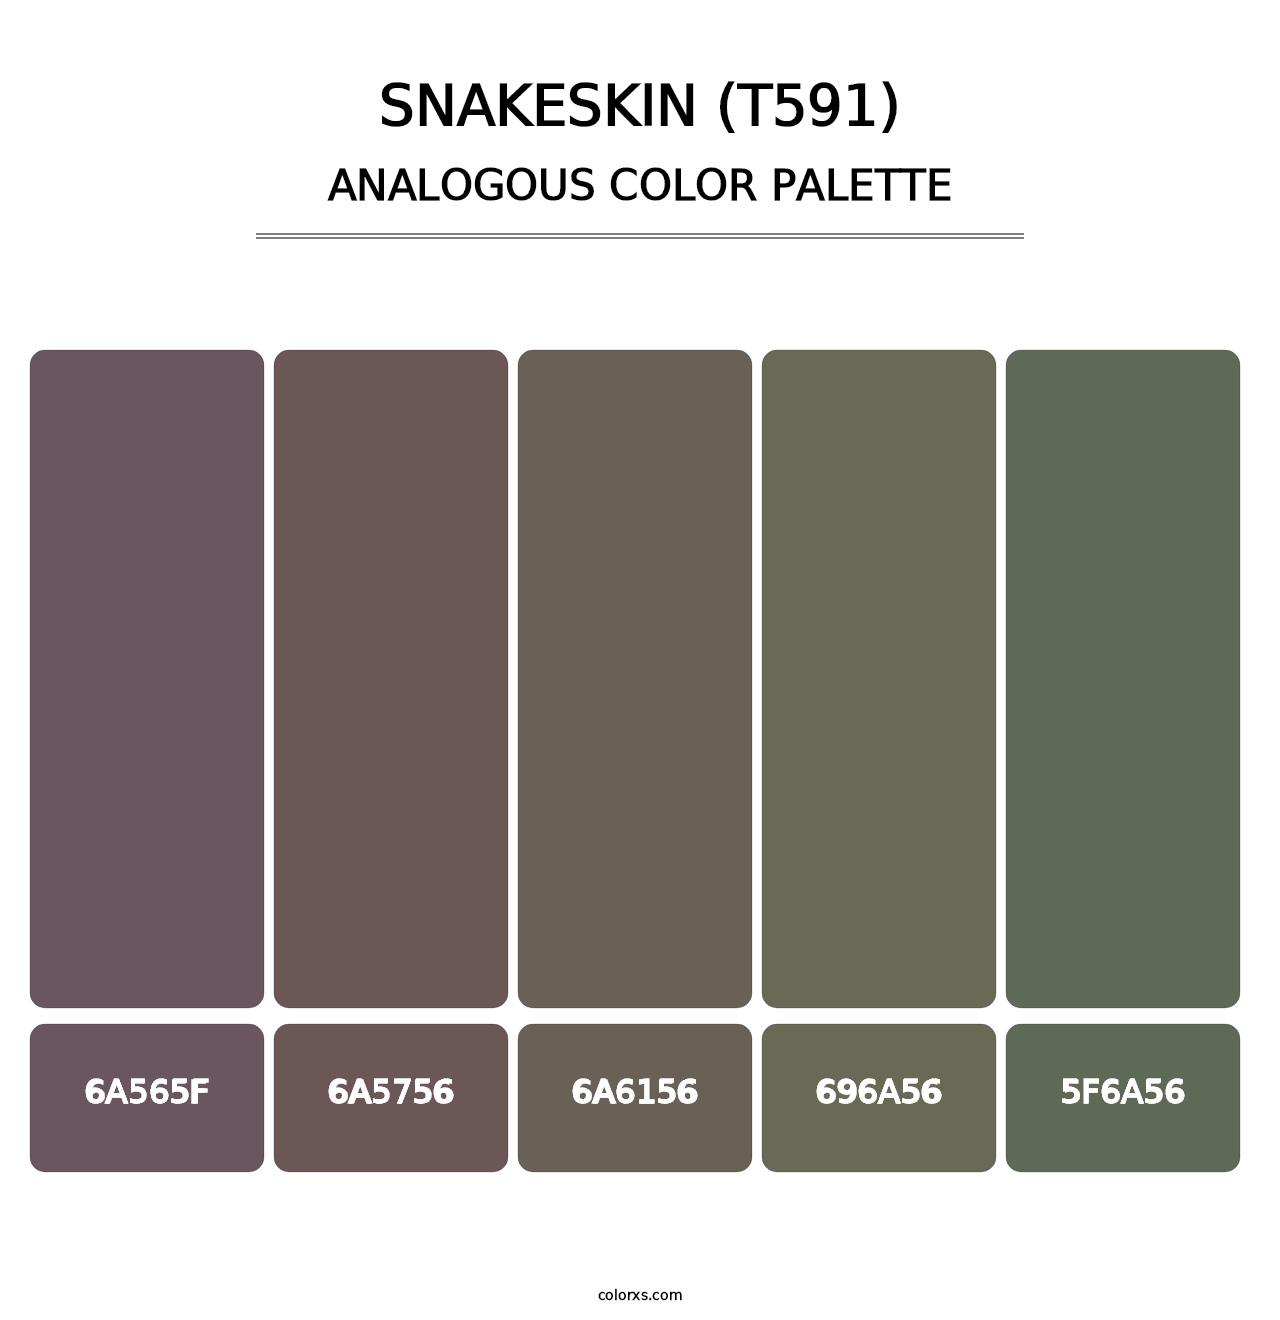 Snakeskin (T591) - Analogous Color Palette